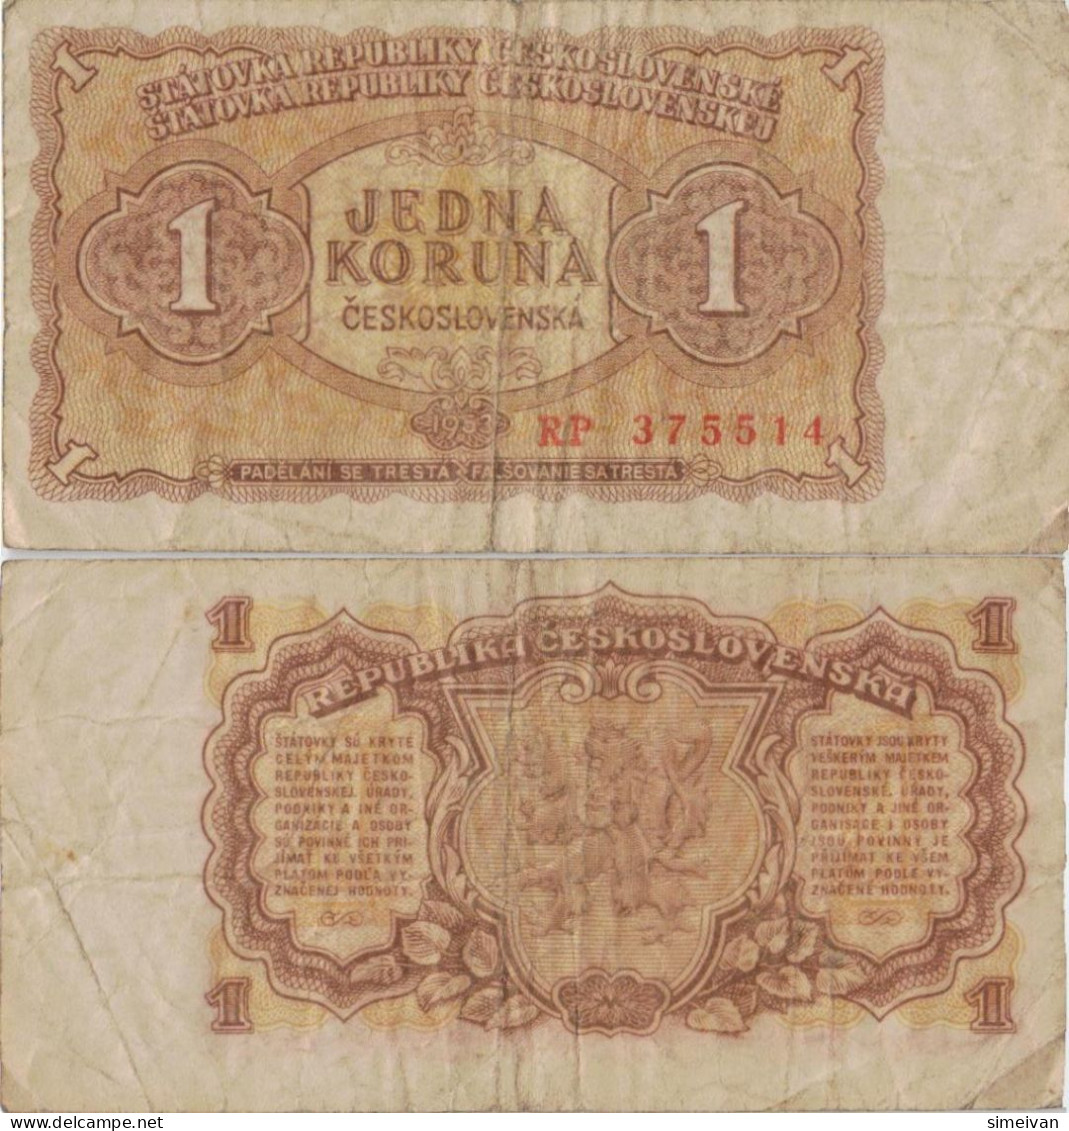 Czechoslovakia 1 Koruna 1953 P-78b Banknote Europe Currency Tchécoslovaquie Tschechoslowakei #5231 - Checoslovaquia